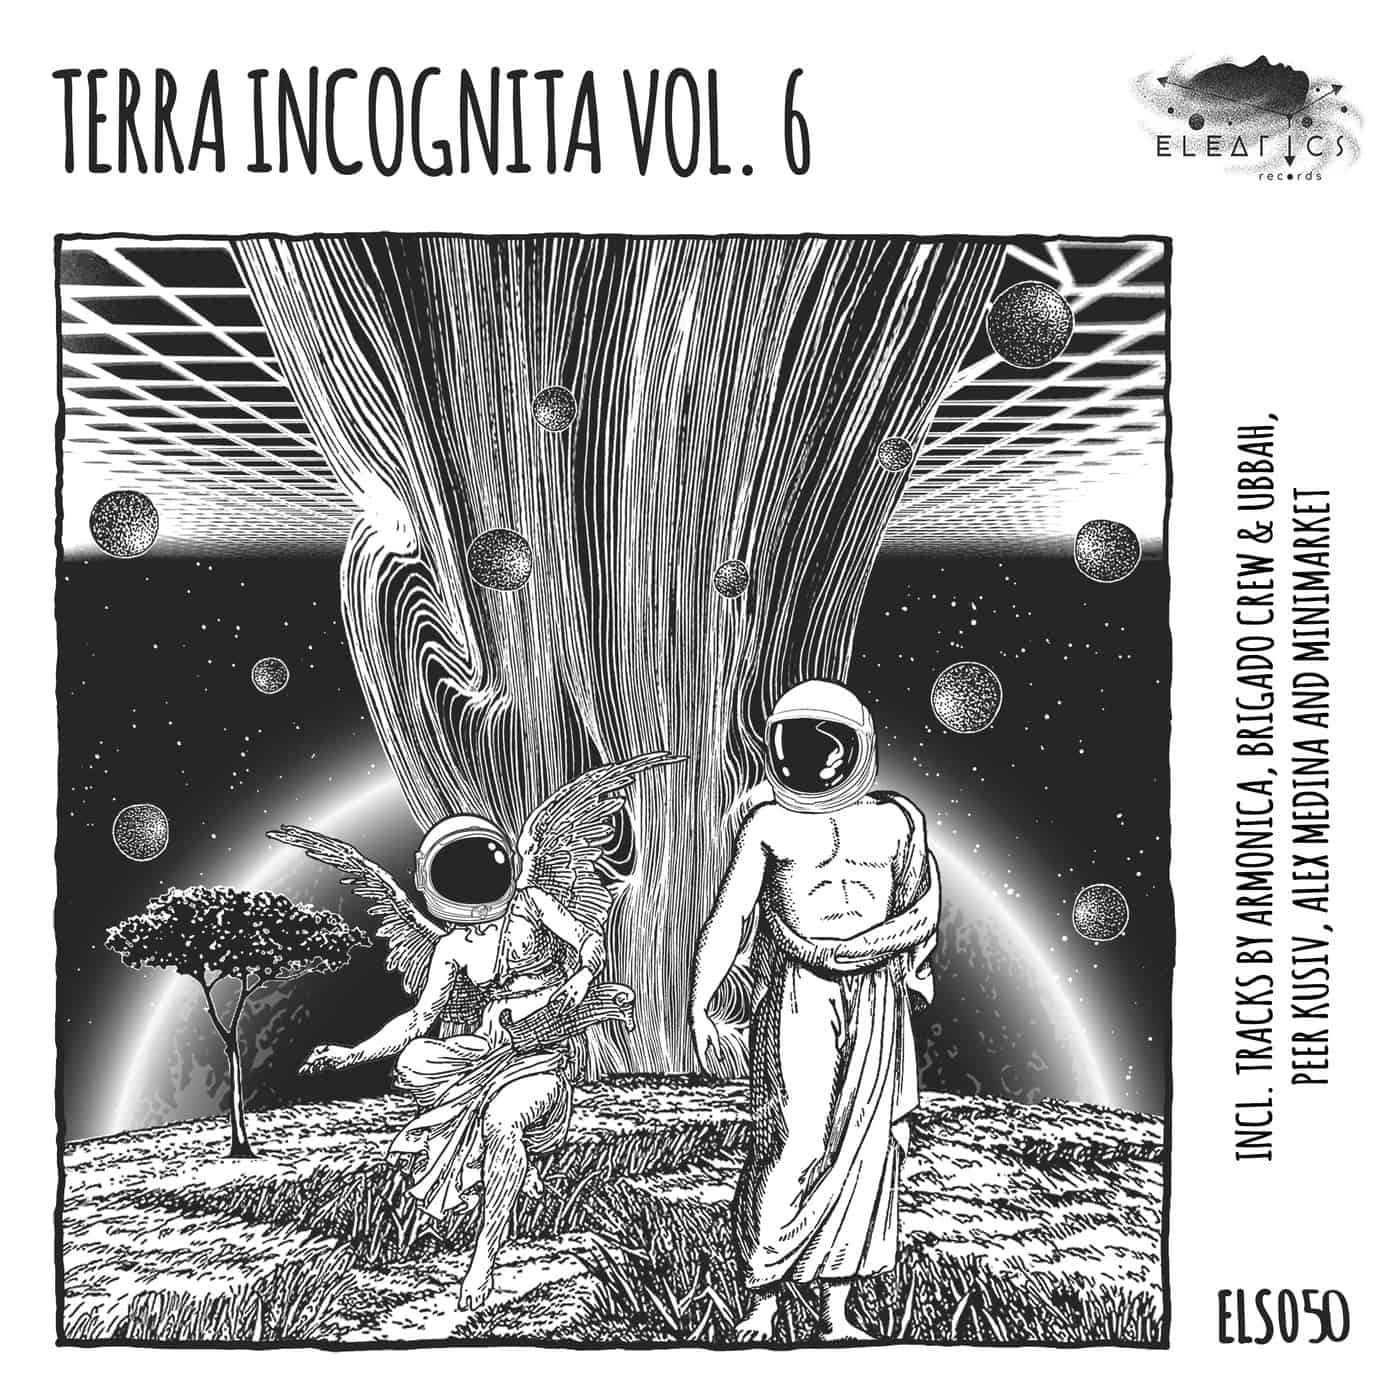 image cover: VA - Terra Incognita Vol. 6 / ELS050